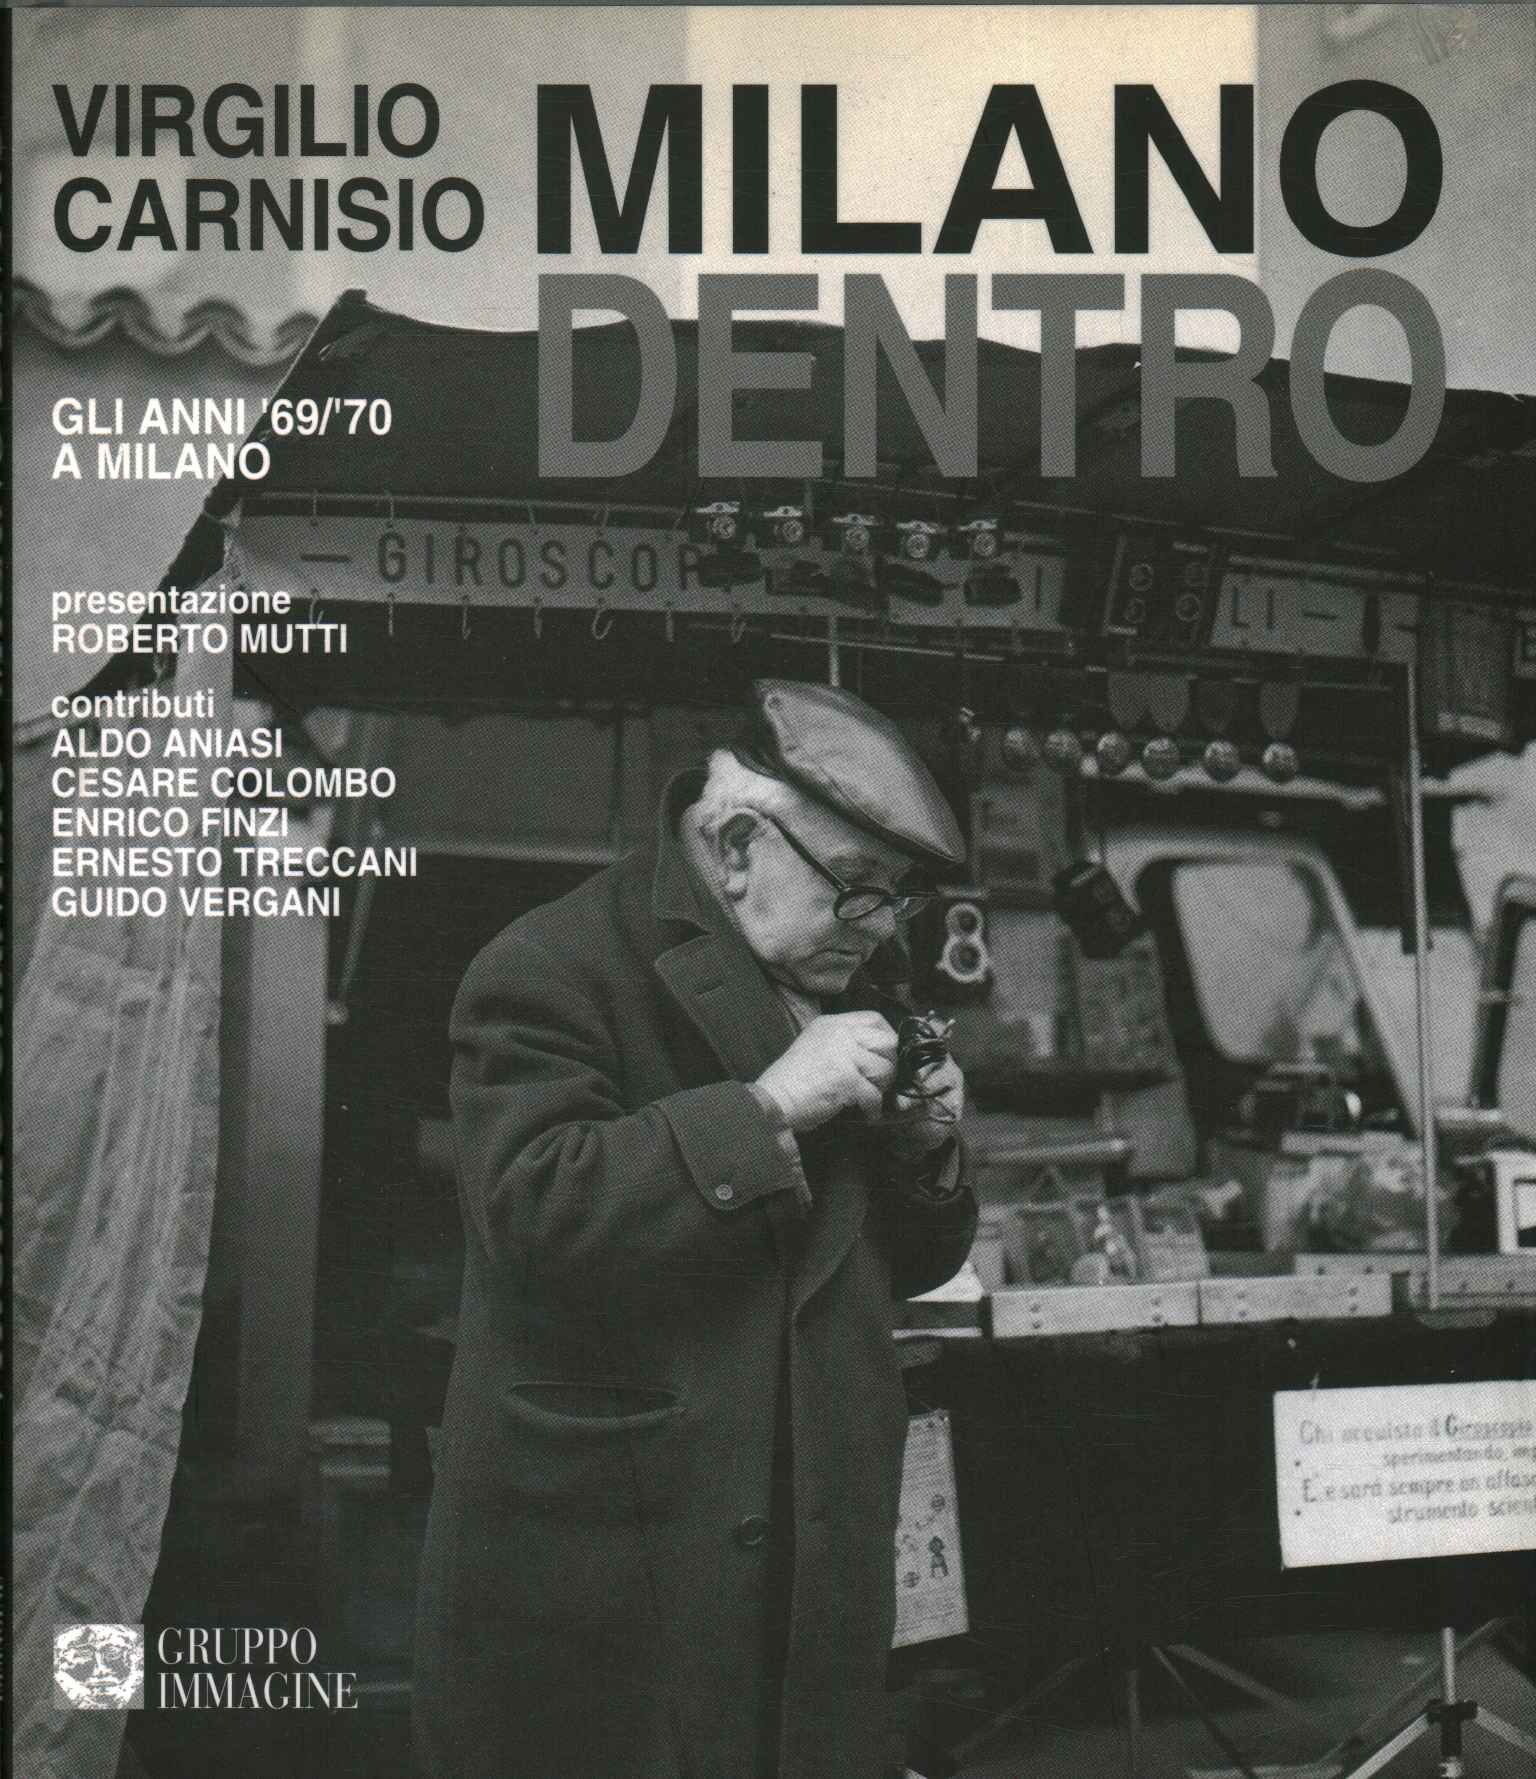 Milan inside. The years 69/70 in Milan